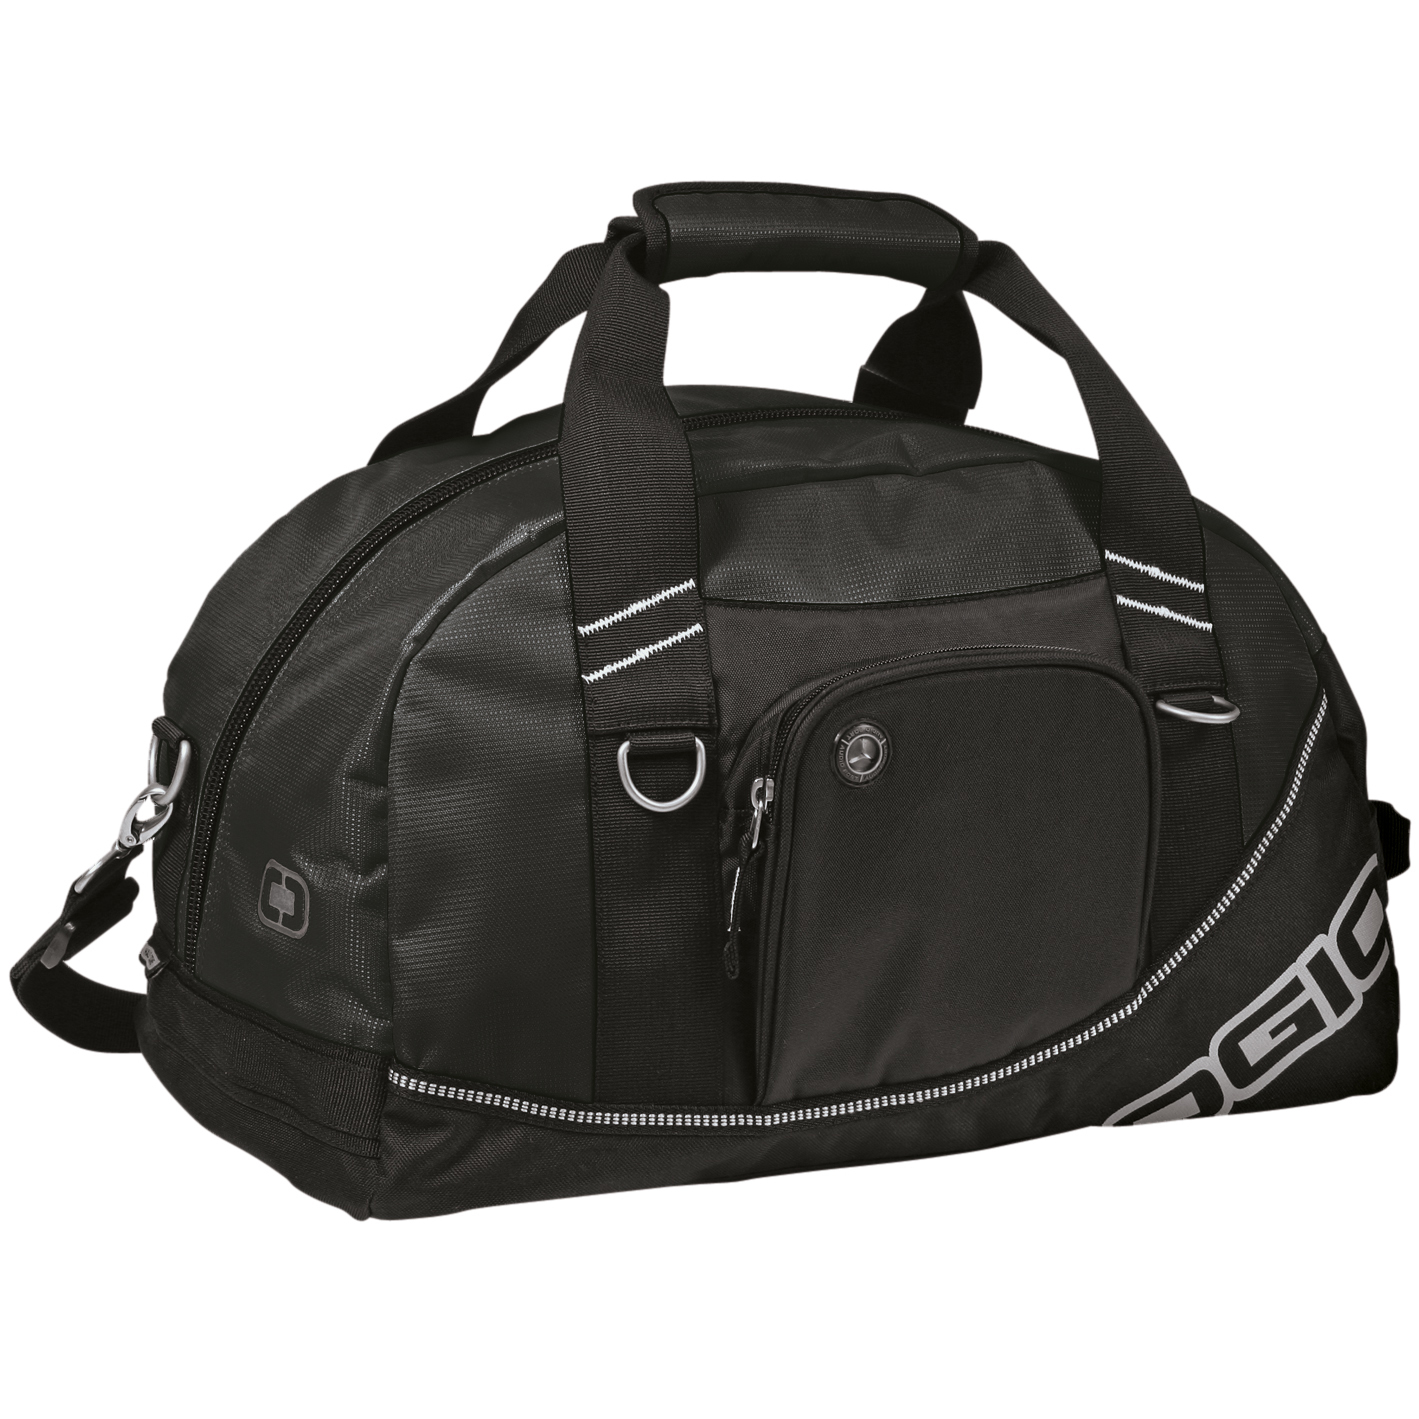 Ogio Half Dome Sports Bag in black